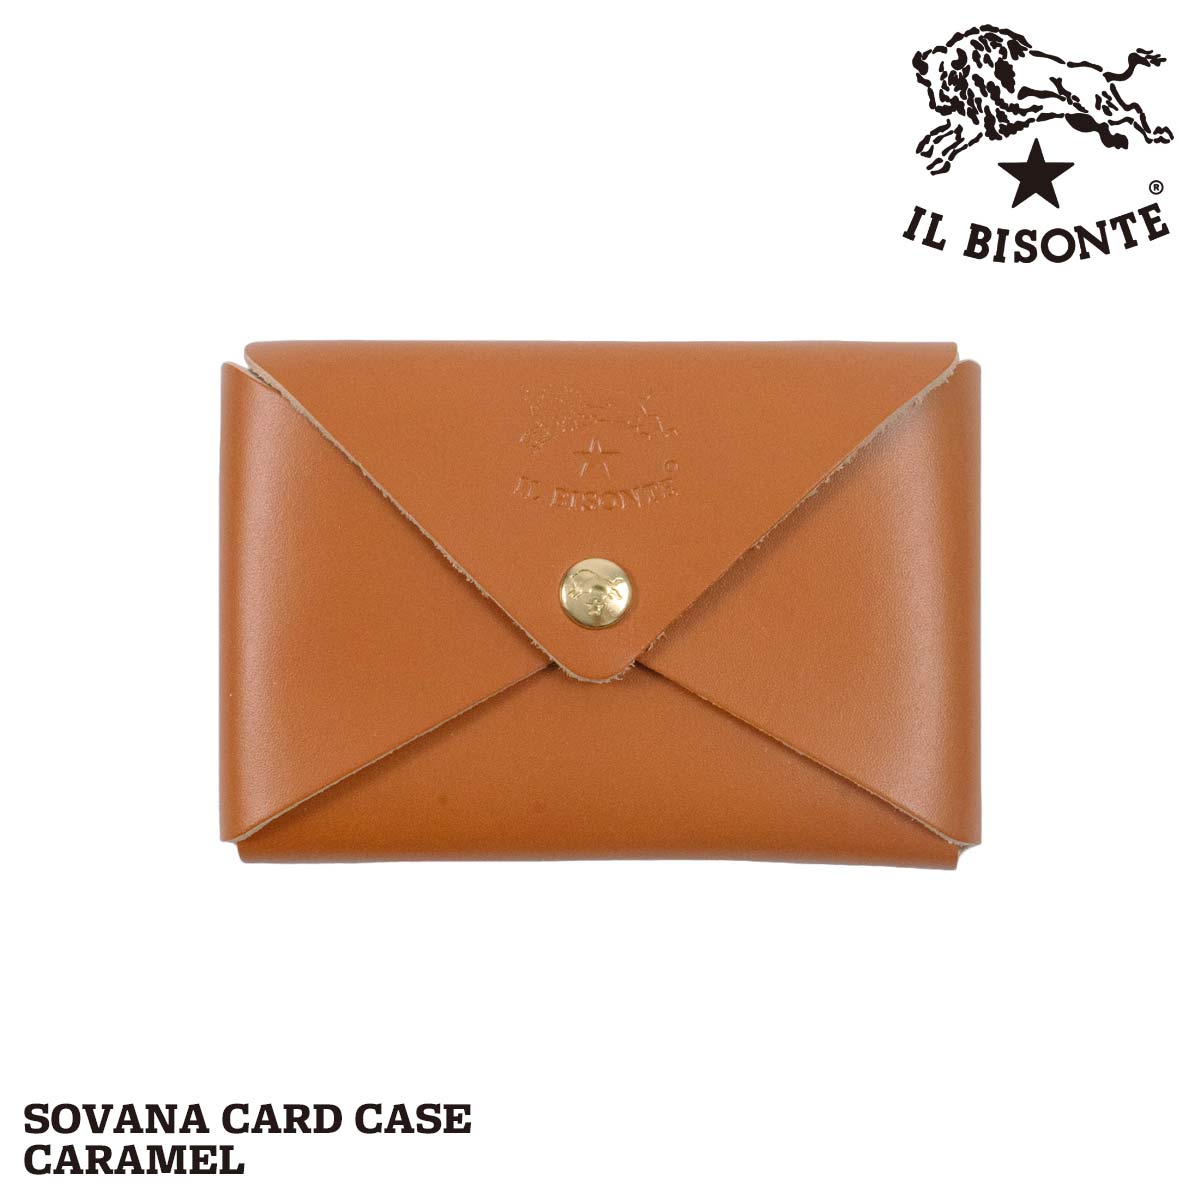 イルビゾンテ IL BISONTE カードケース ソバナ ユニセックス SCC031 SOVANA 名刺入れ レザー 革 イタリア製